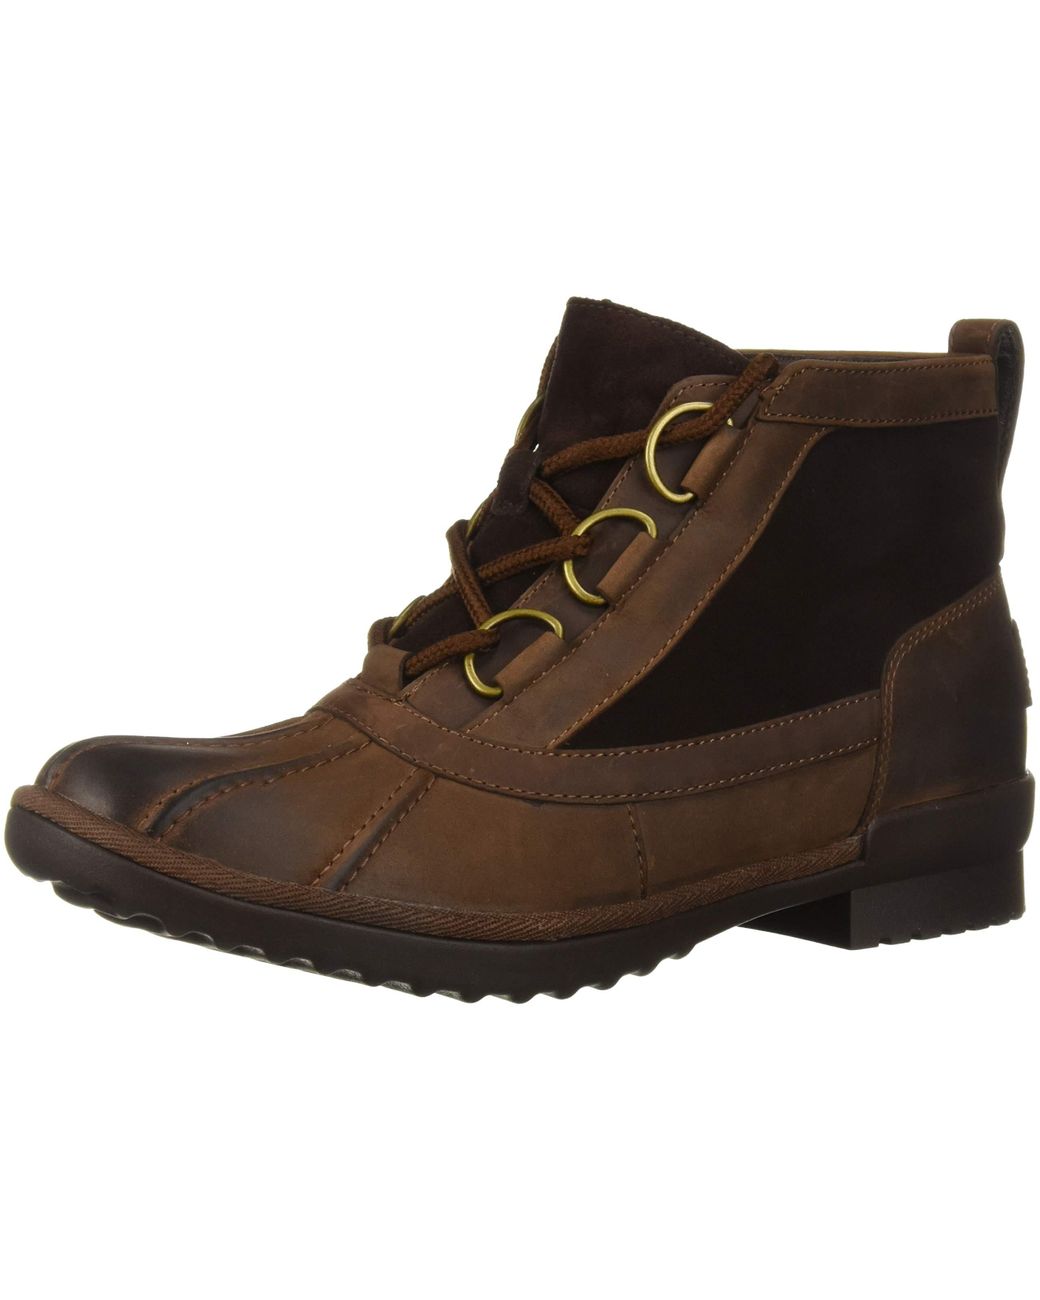 ugg heather boot sale